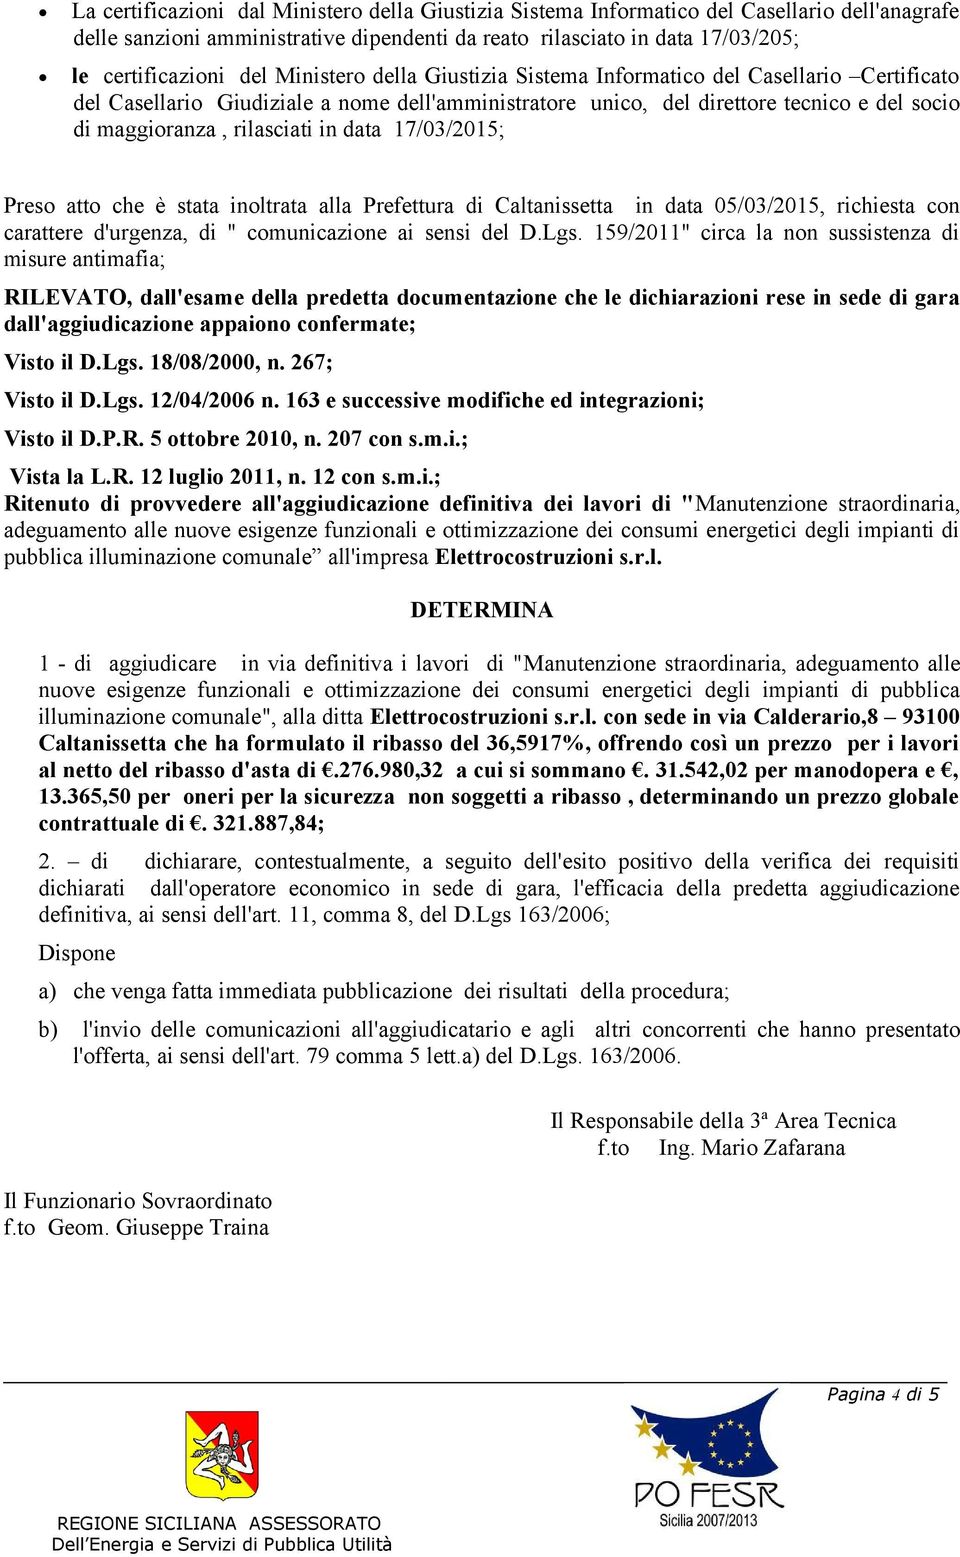 data 17/03/2015; Preso atto che è stata inoltrata alla Prefettura di Caltanissetta in data 05/03/2015, richiesta con carattere d'urgenza, di " comunicazione ai sensi del D.Lgs.